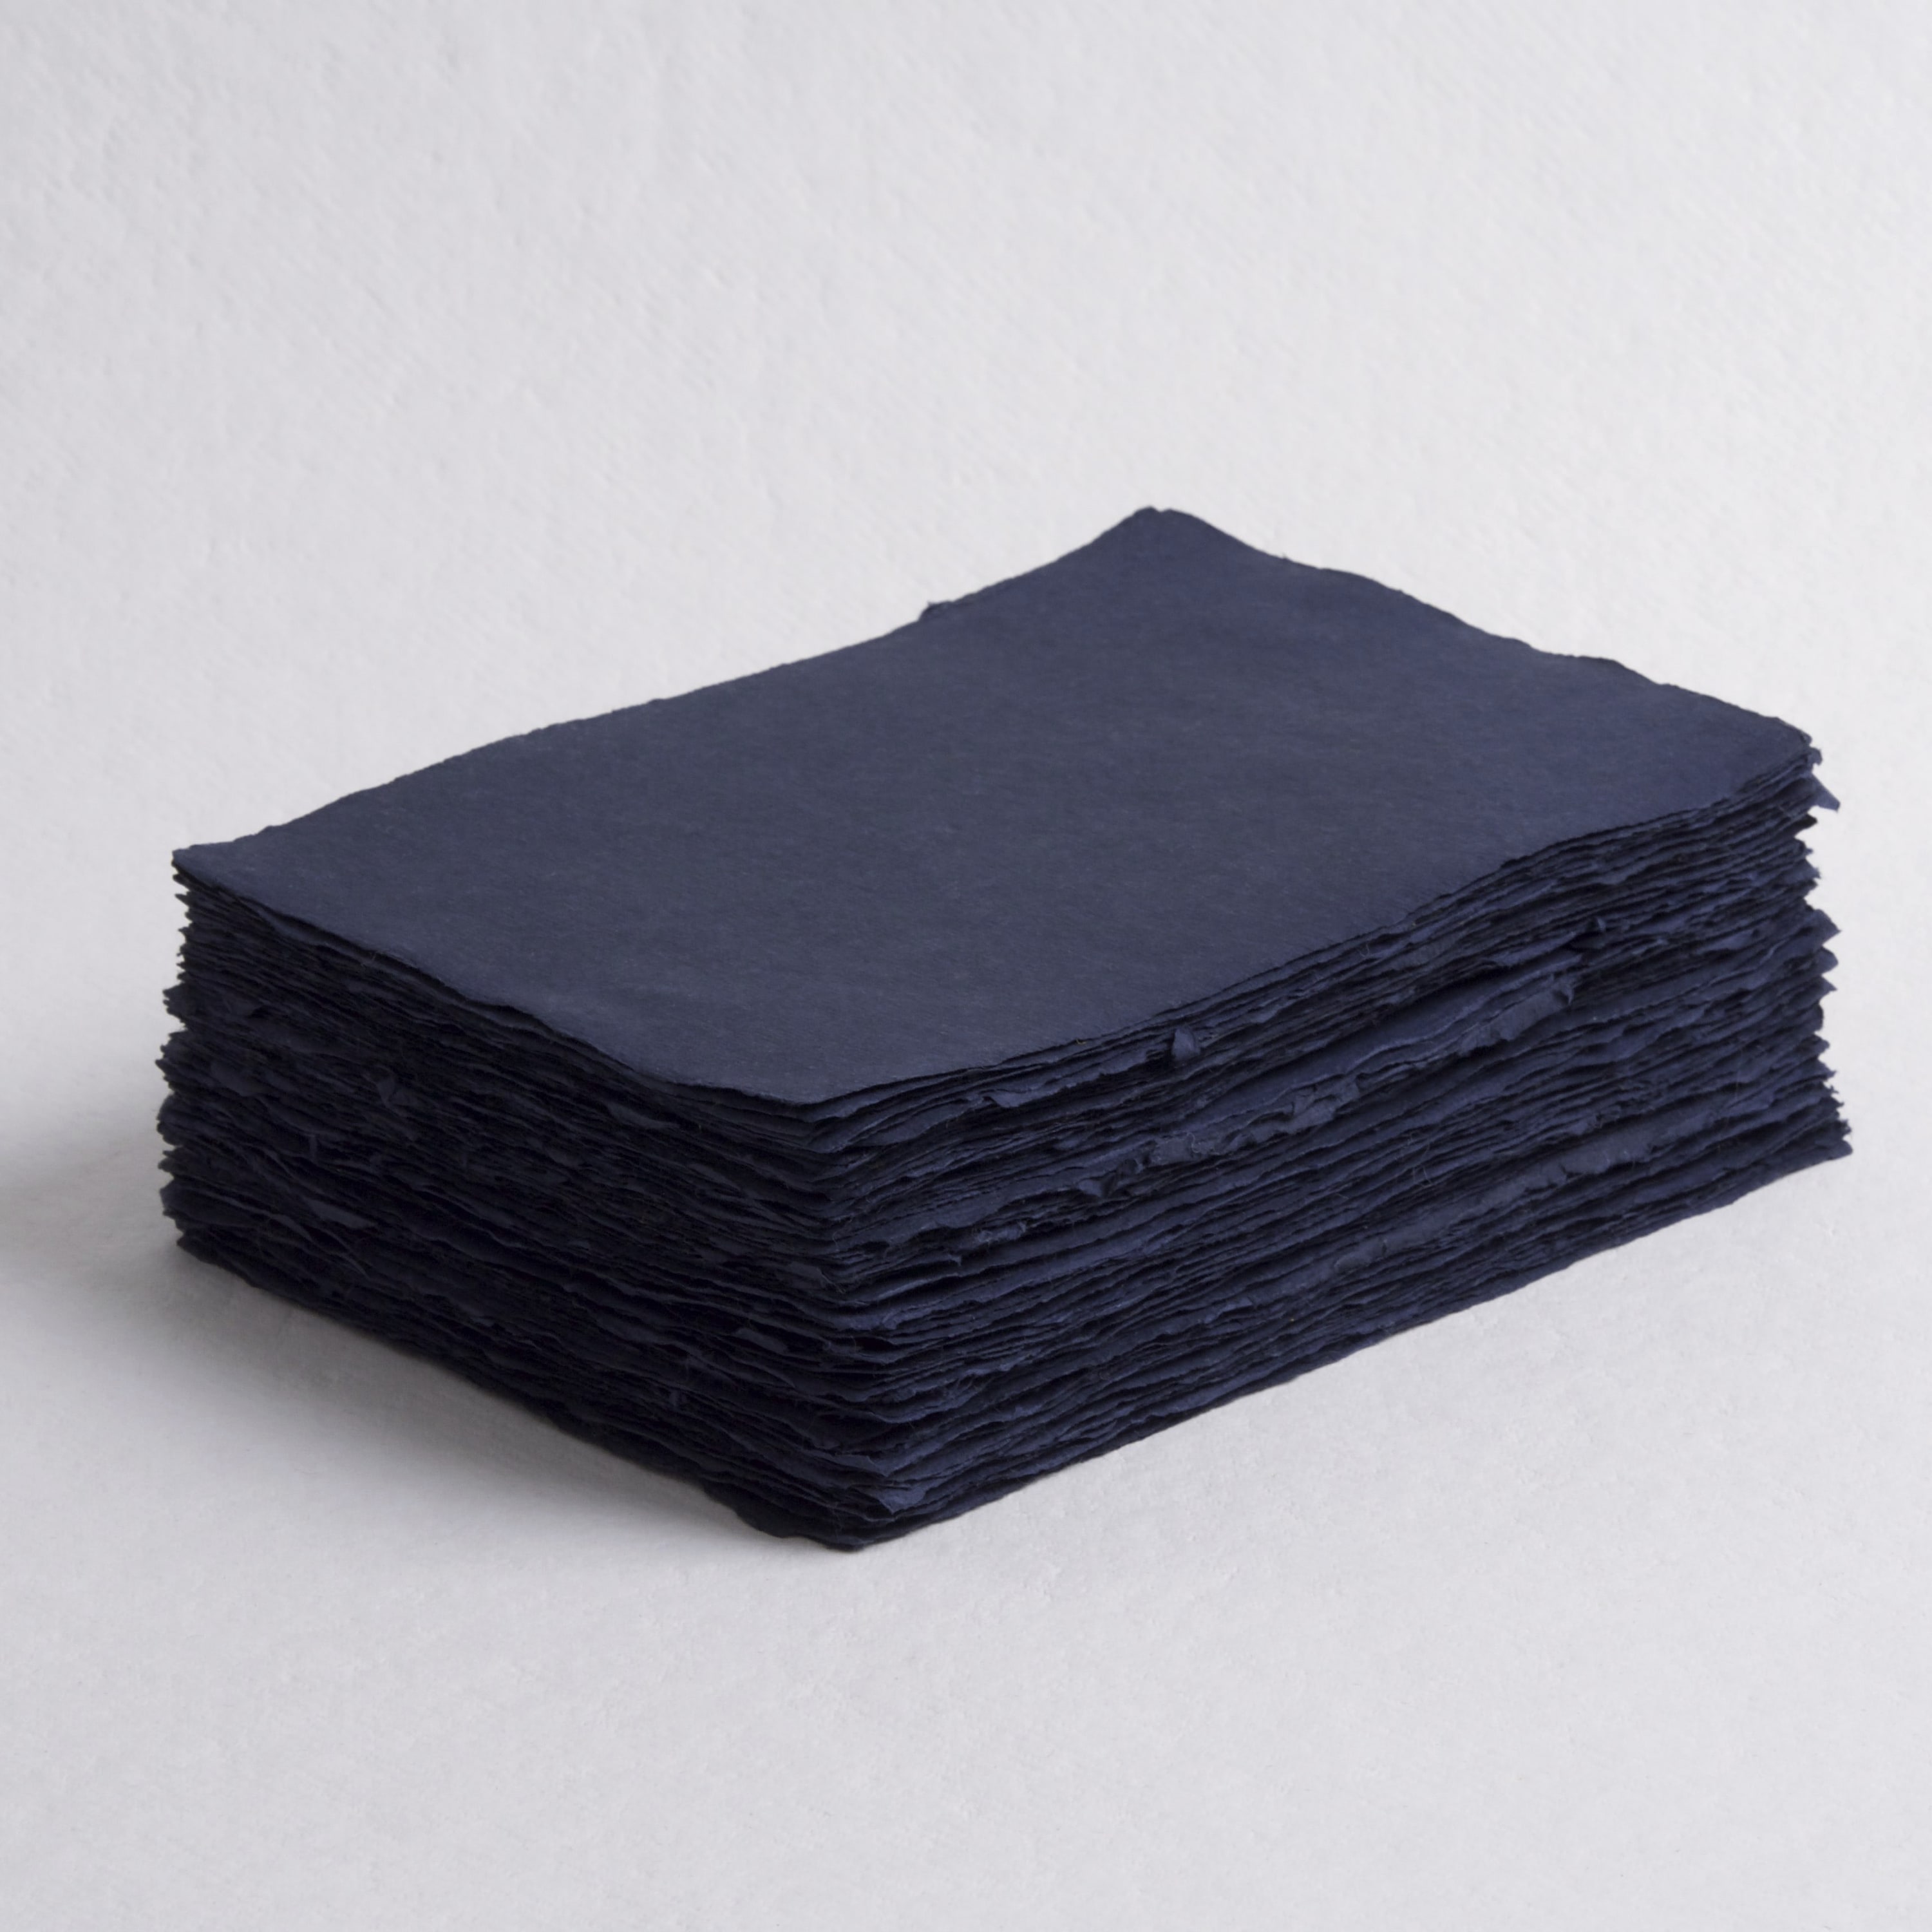 Deep Blue, 5 x 7, 300 gsm – Deckle edge paper – Indian Cotton Paper Co.